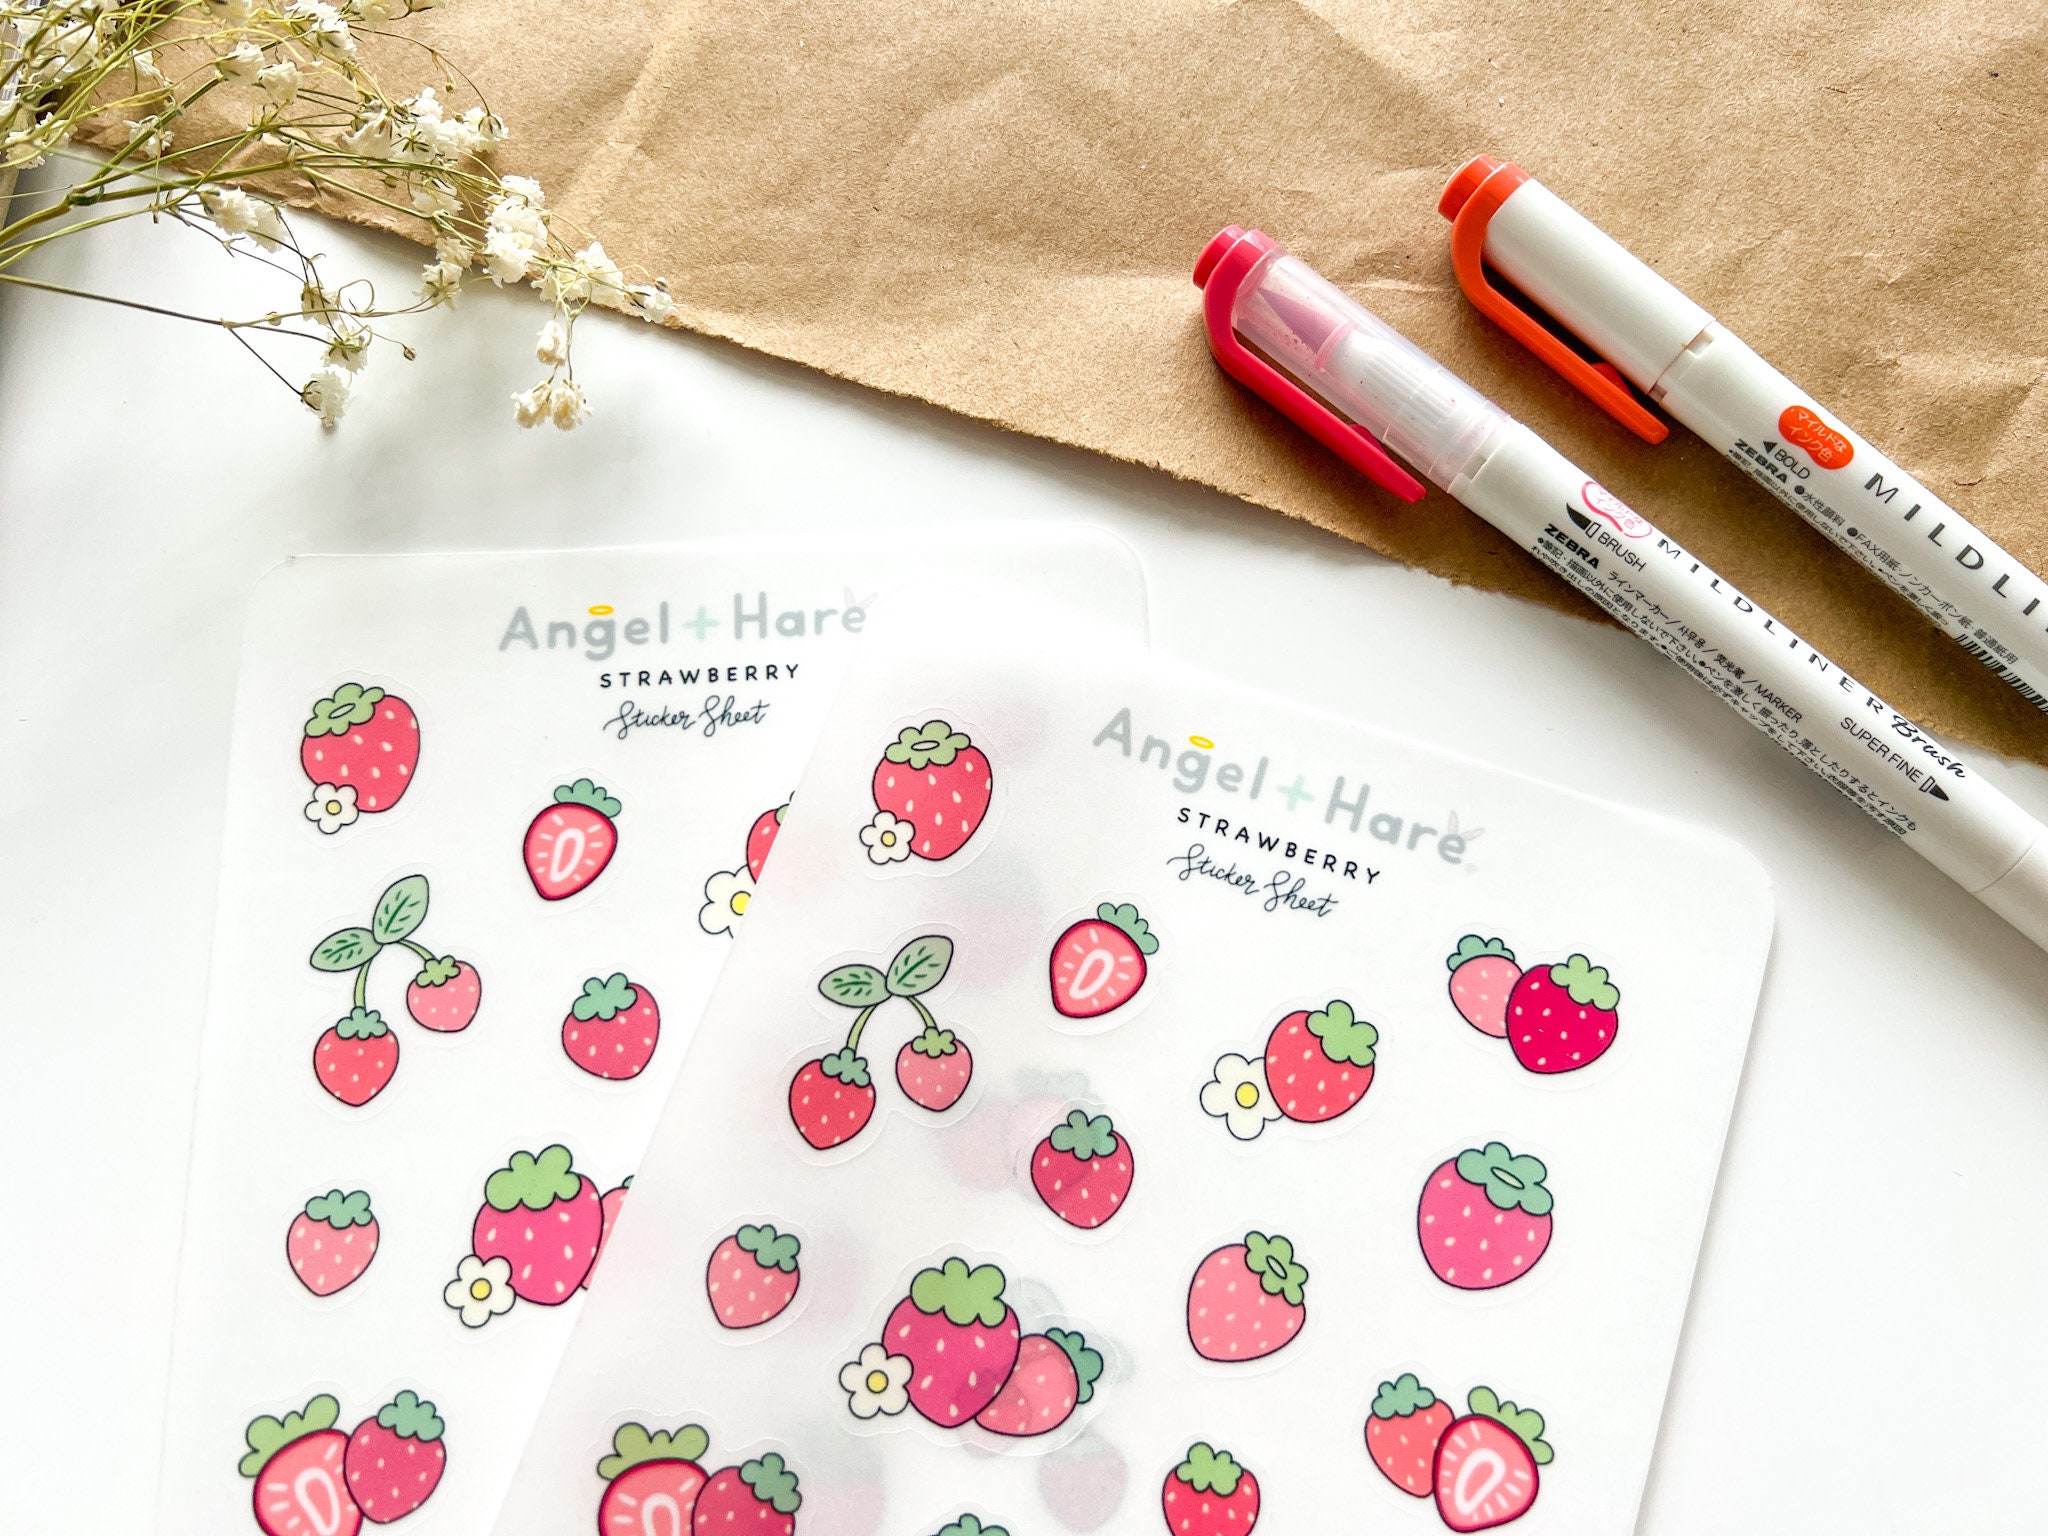 Strawberry sticker sheet — Trinhtoro